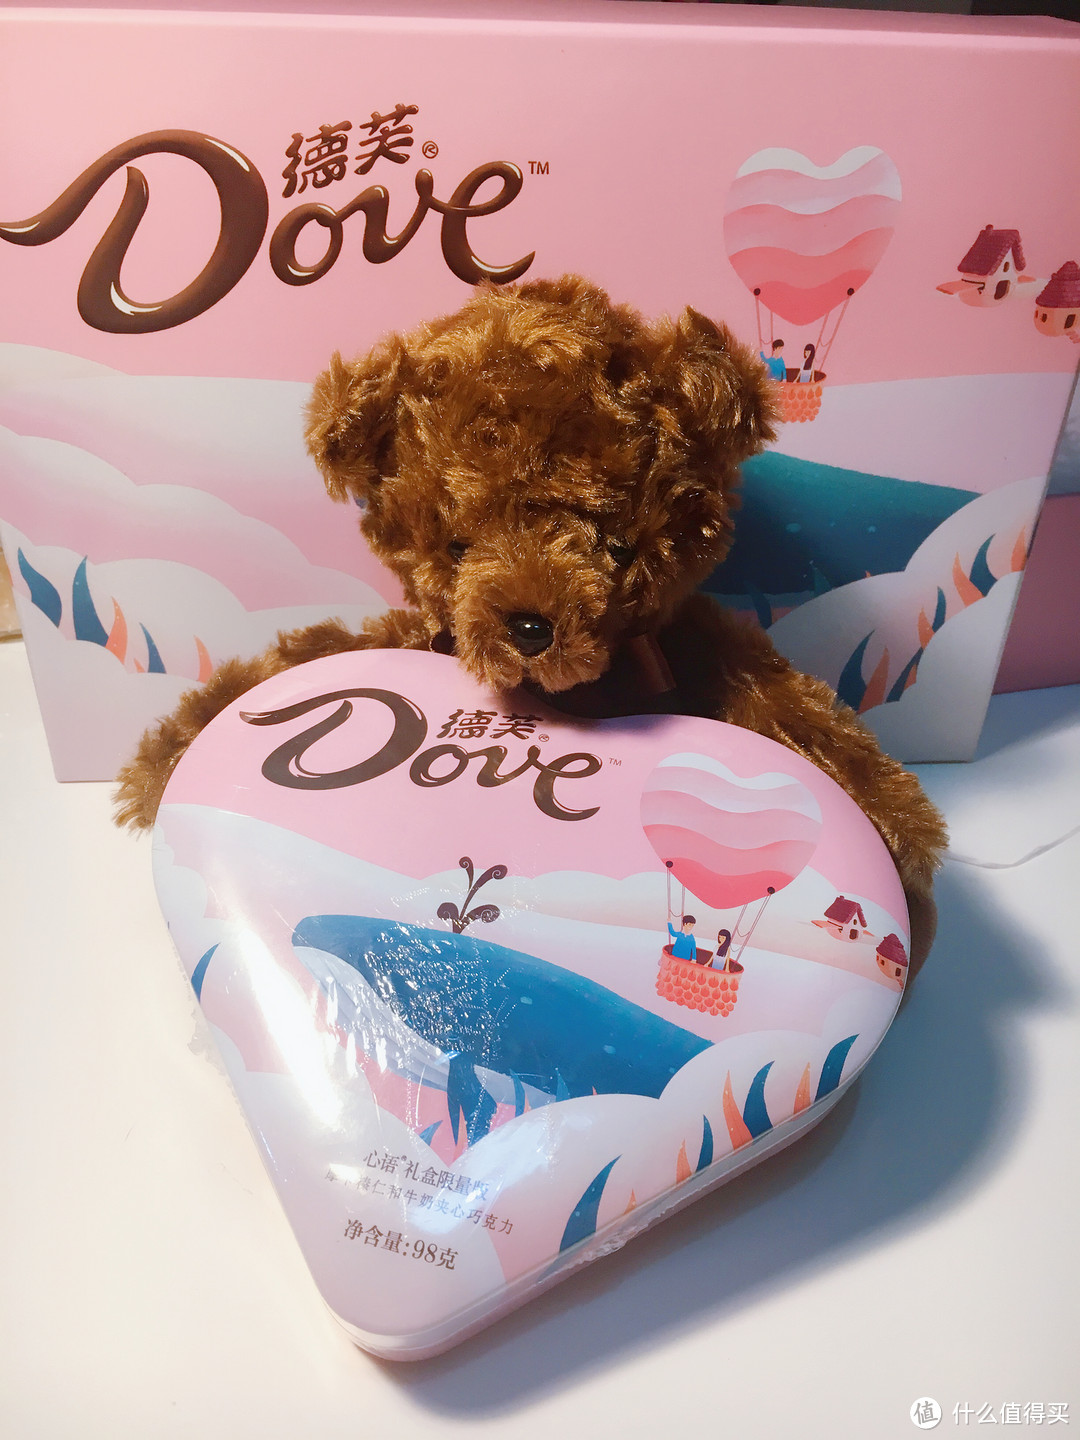 与爱人分享的甜蜜——德芙（Dove）巧克力礼盒组合装 马卡龙礼盒+尊慕礼盒